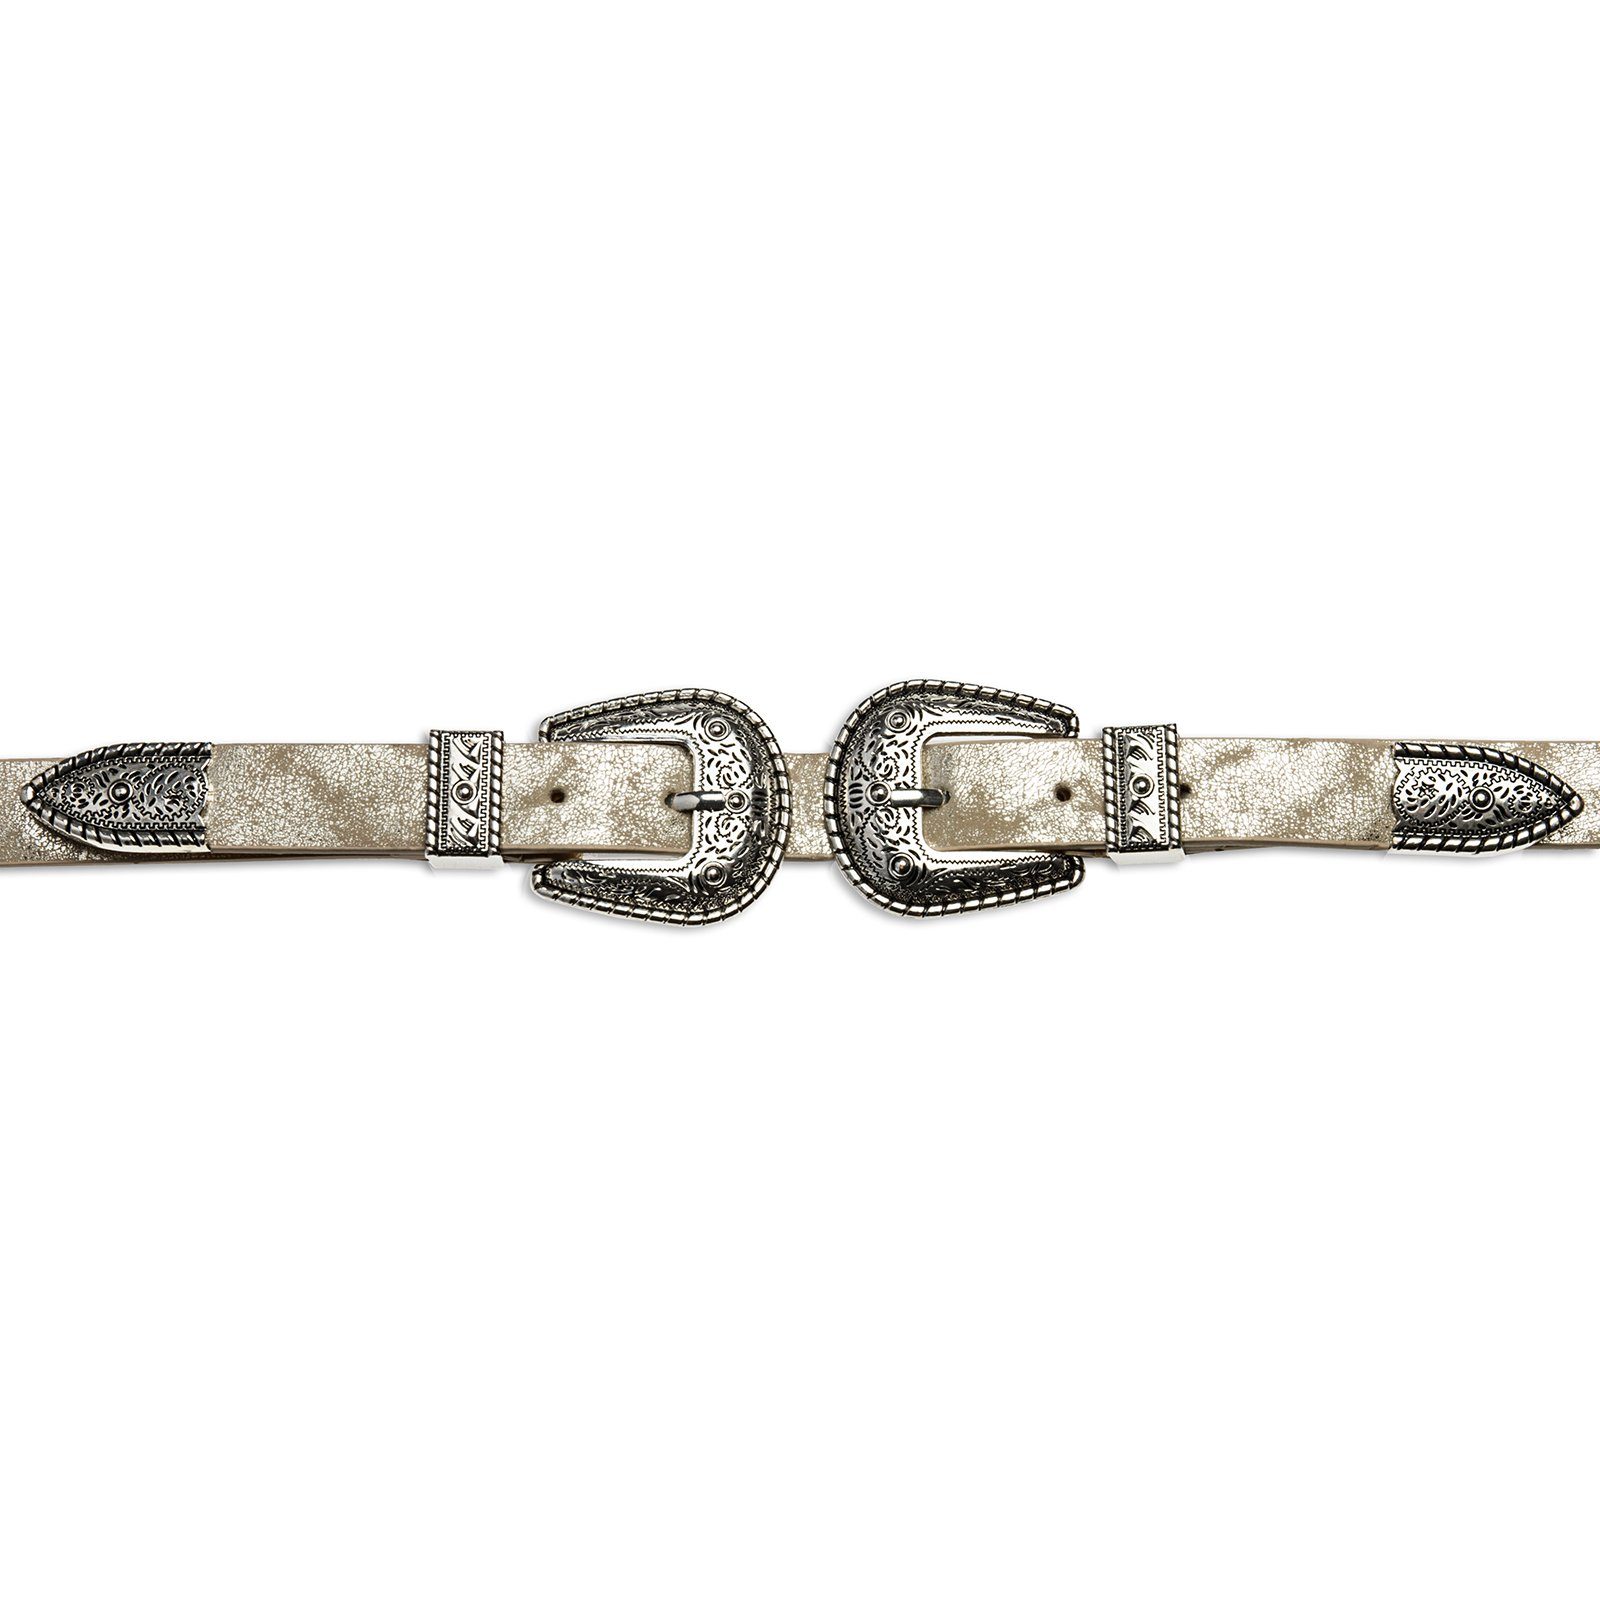 Taillengürtel gold Caspar Damen stylischer / Westerngürtel Trachtengürtel mit GU316 Doppelschnalle